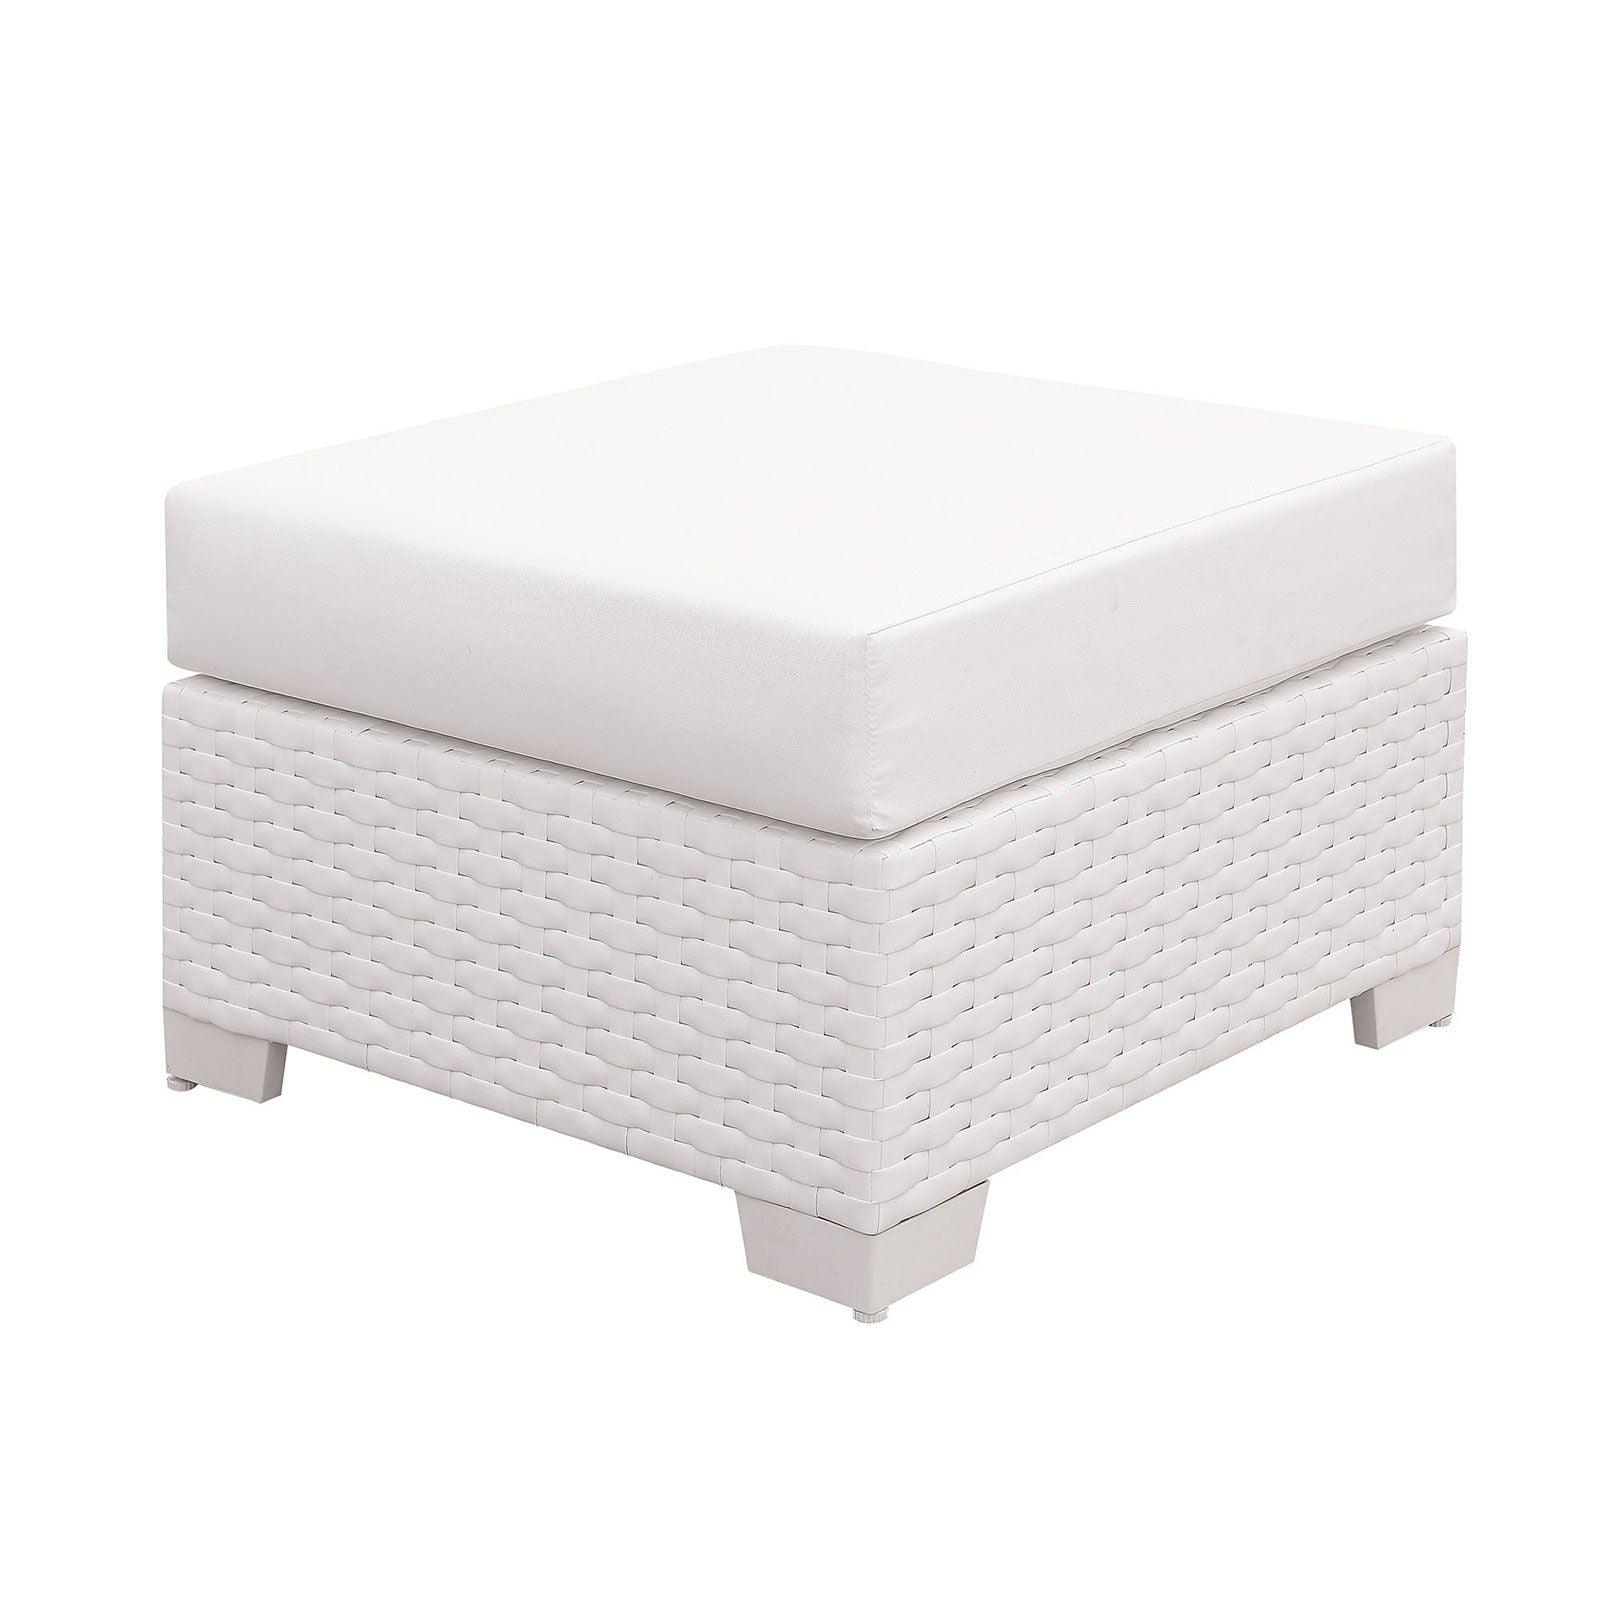 Furniture of America - Somani - Small Ottoman - White - 5th Avenue Furniture